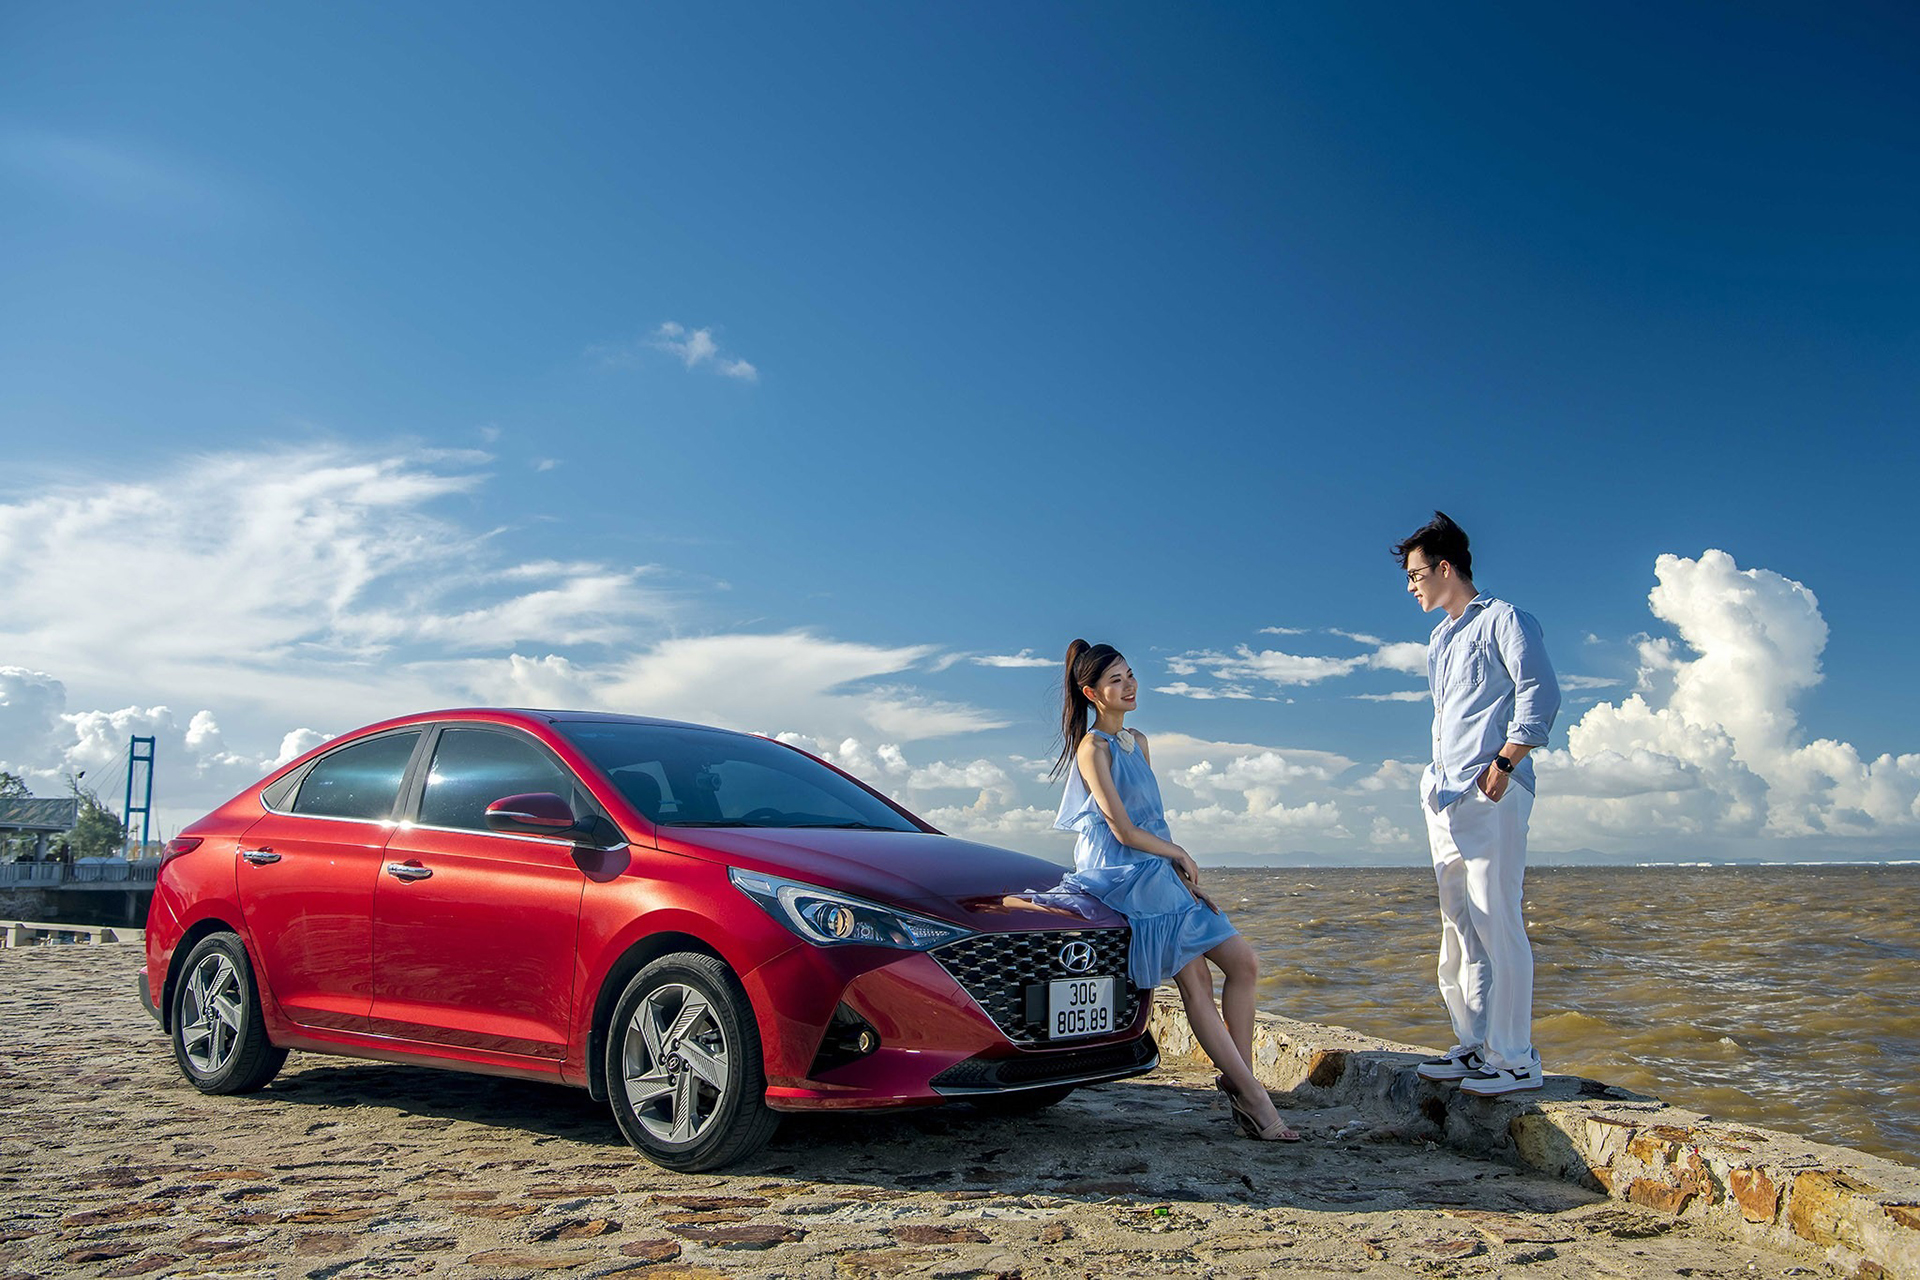 Hyundai Accent tiếp tục là mẫu xe cỡ nhỏ được ưa chuộng nhất tại thị trường ô tô Việt Nam.  Khách Việt chuộng xe ô tô cỡ nhỏ Hàn Quốc